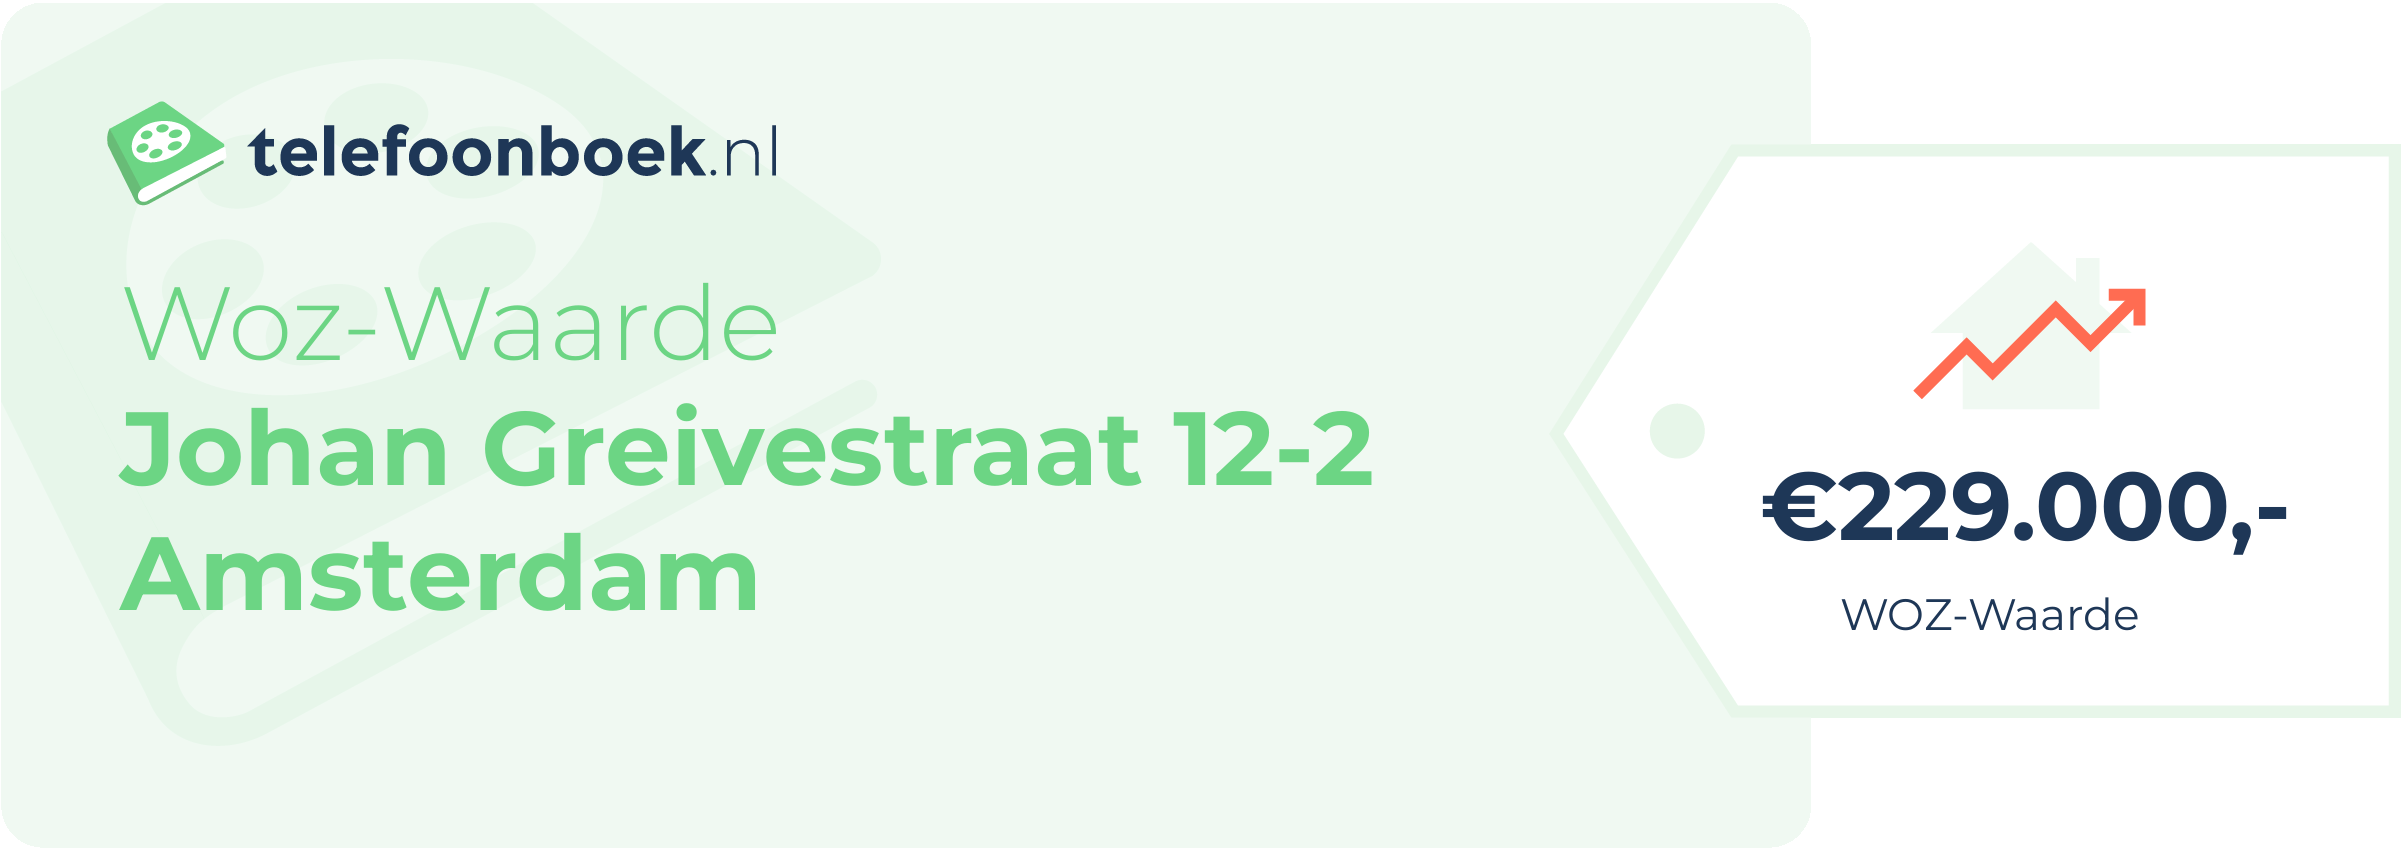 WOZ-waarde Johan Greivestraat 12-2 Amsterdam